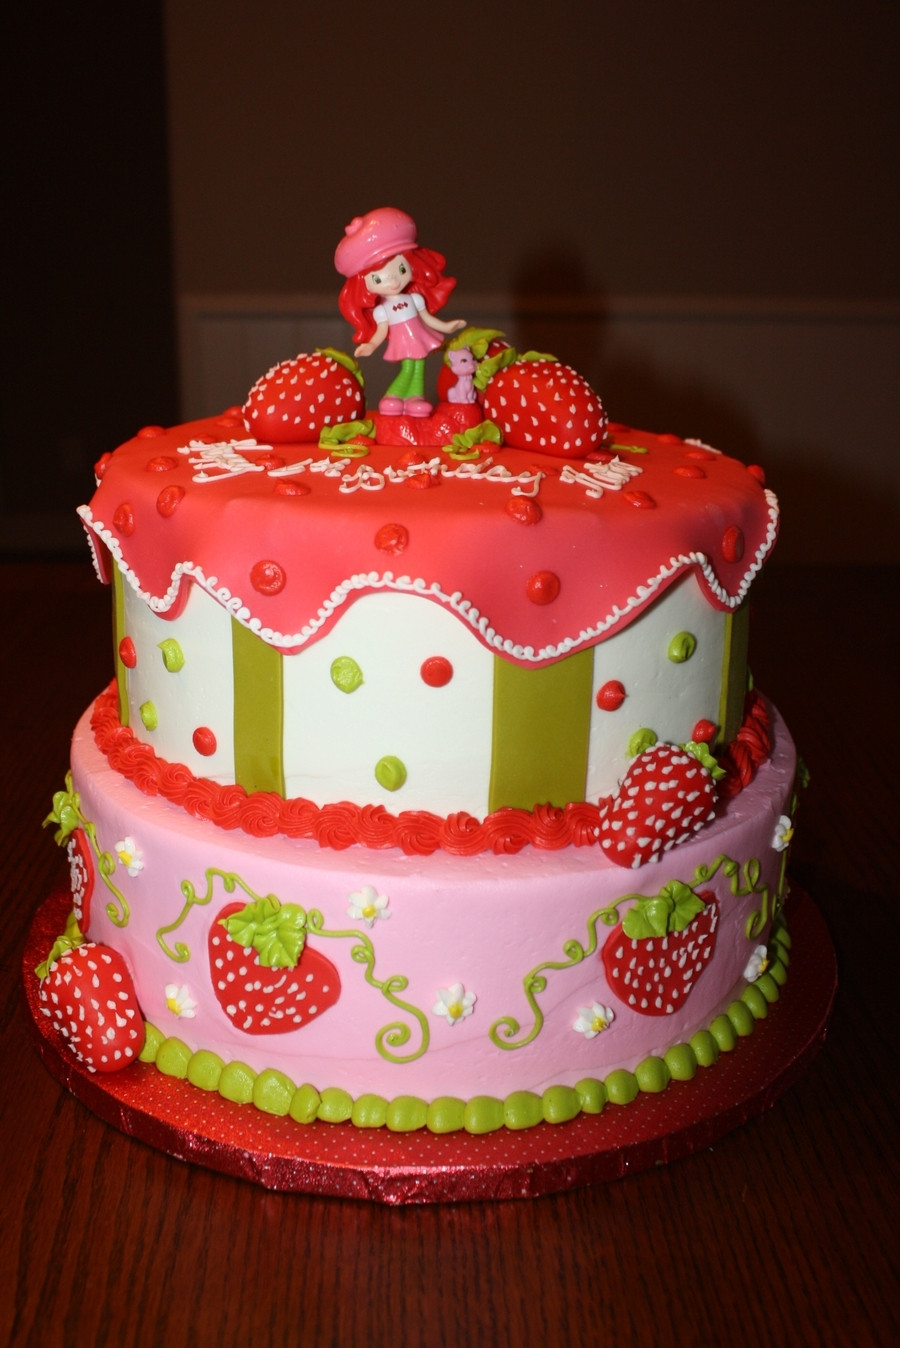 Strawberry Shortcake Birthday Cake Recipes
 Strawberry Shortcake Birthday Cake CakeCentral